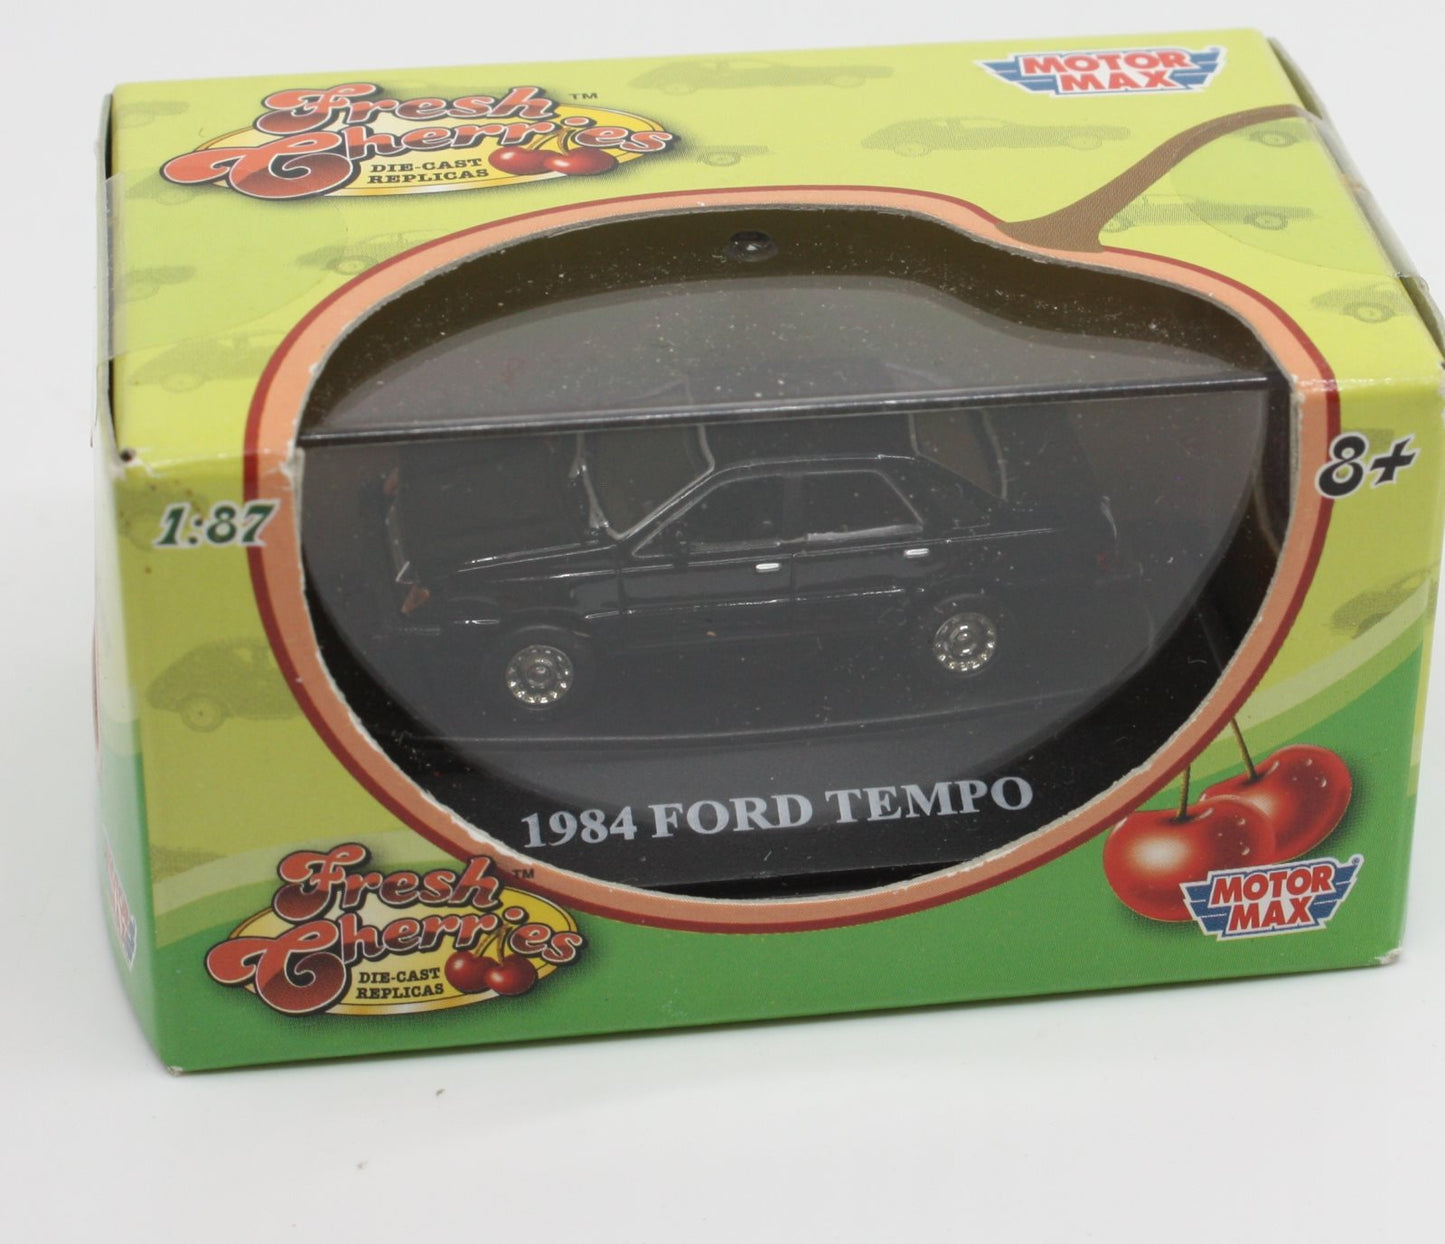 Motor Max 73950FC HO Fresh Cherries 1984 Black Ford Tempo